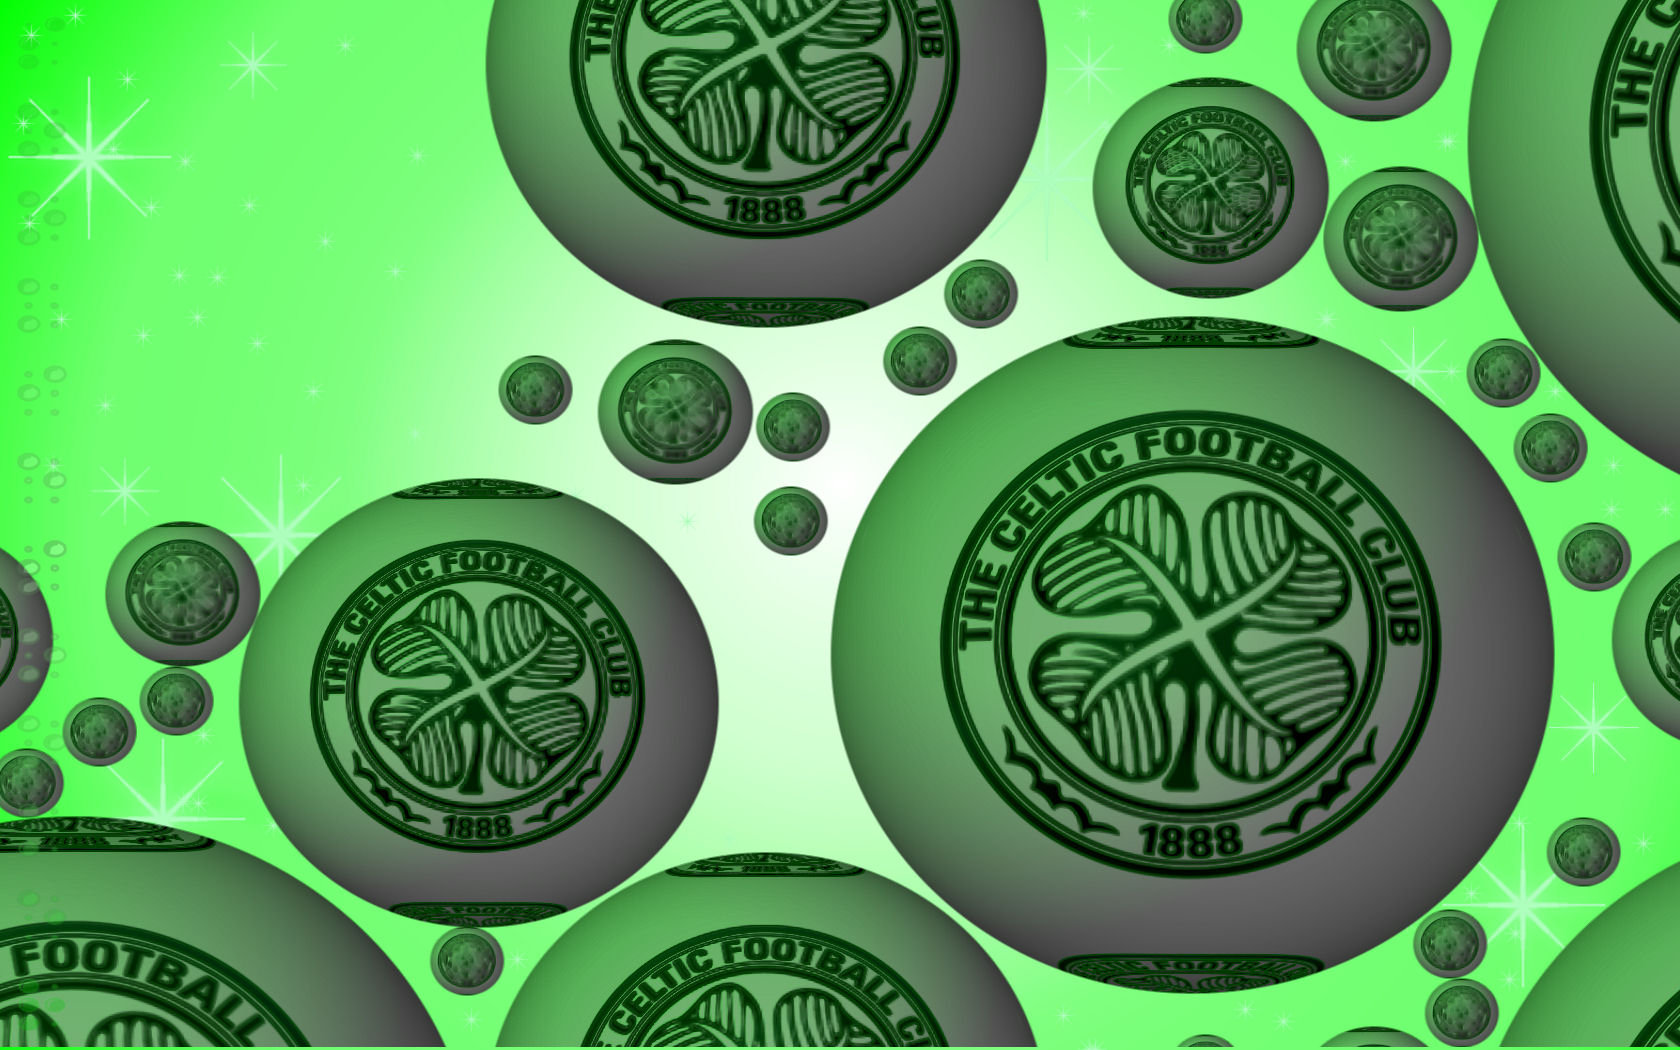 Sookie Celtic Fc Wallpaper By Sookiesooker